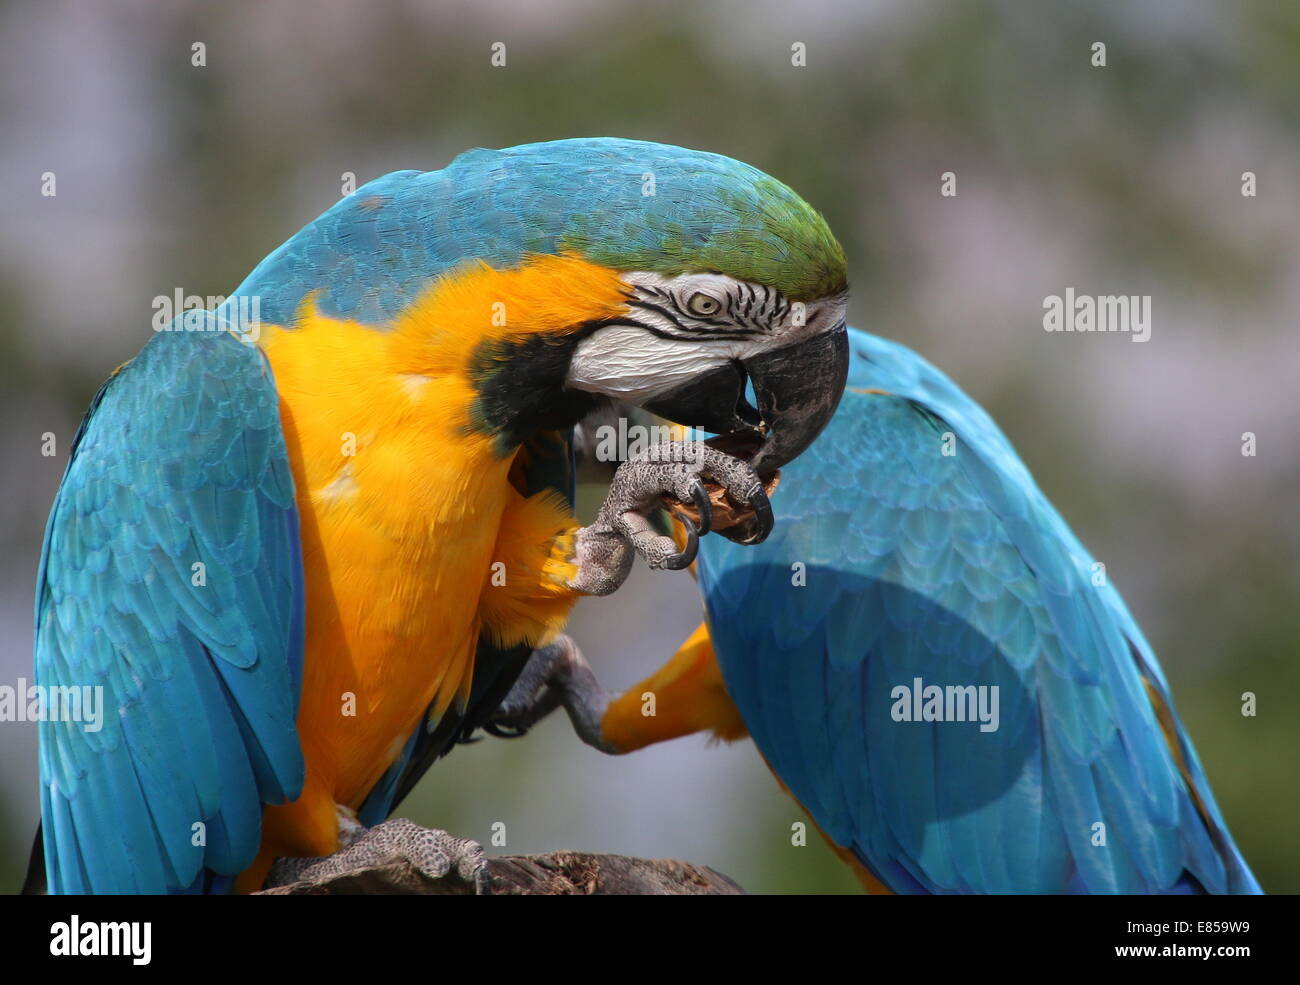 Azul y Amarillo guacamayo (Ara ararauna) close-up, mientras se come una nuez Foto de stock